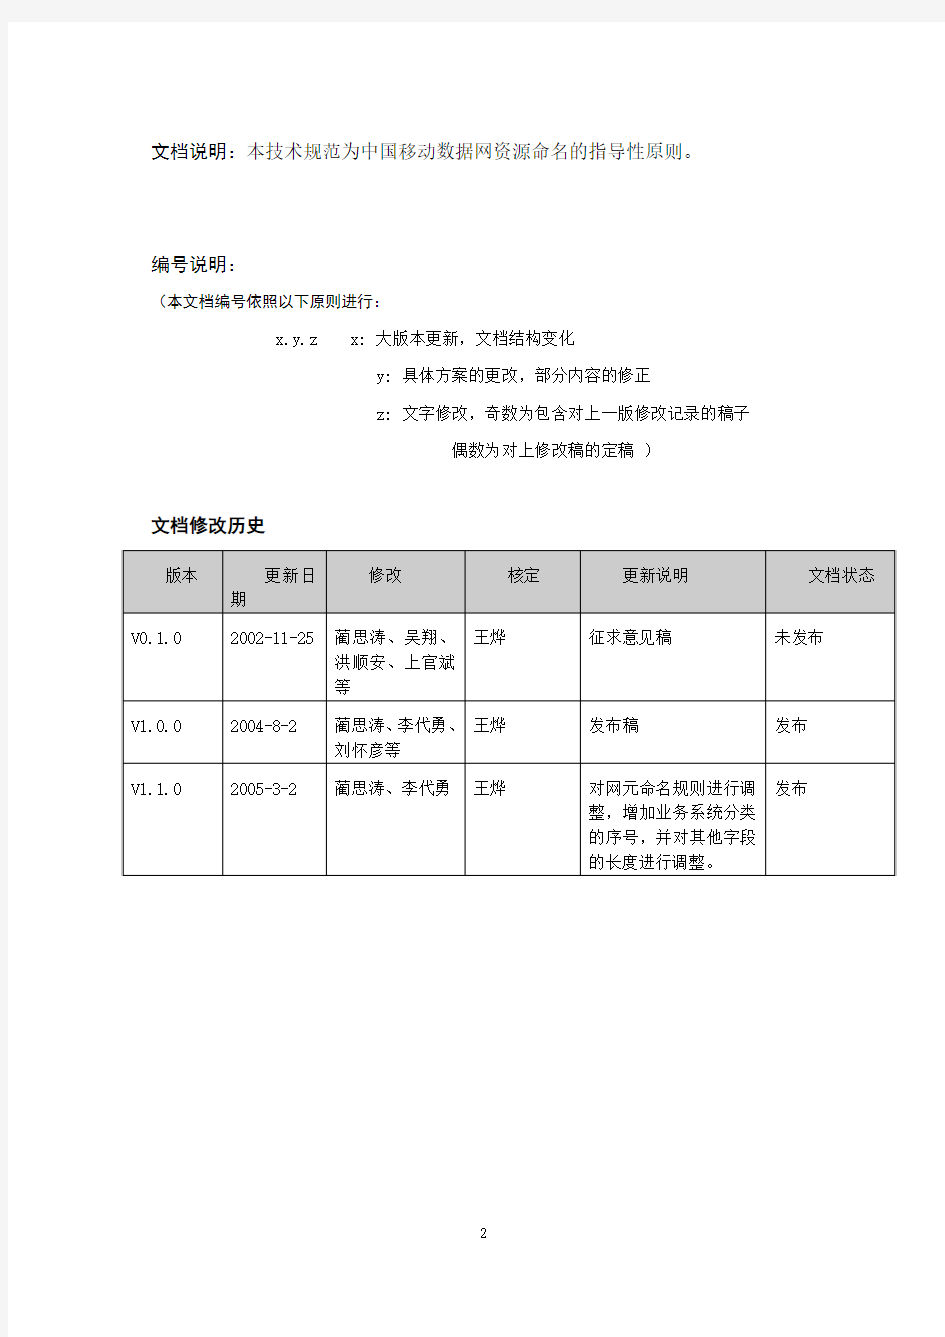 中国移动数据网资源命名规范(V1.1.0)